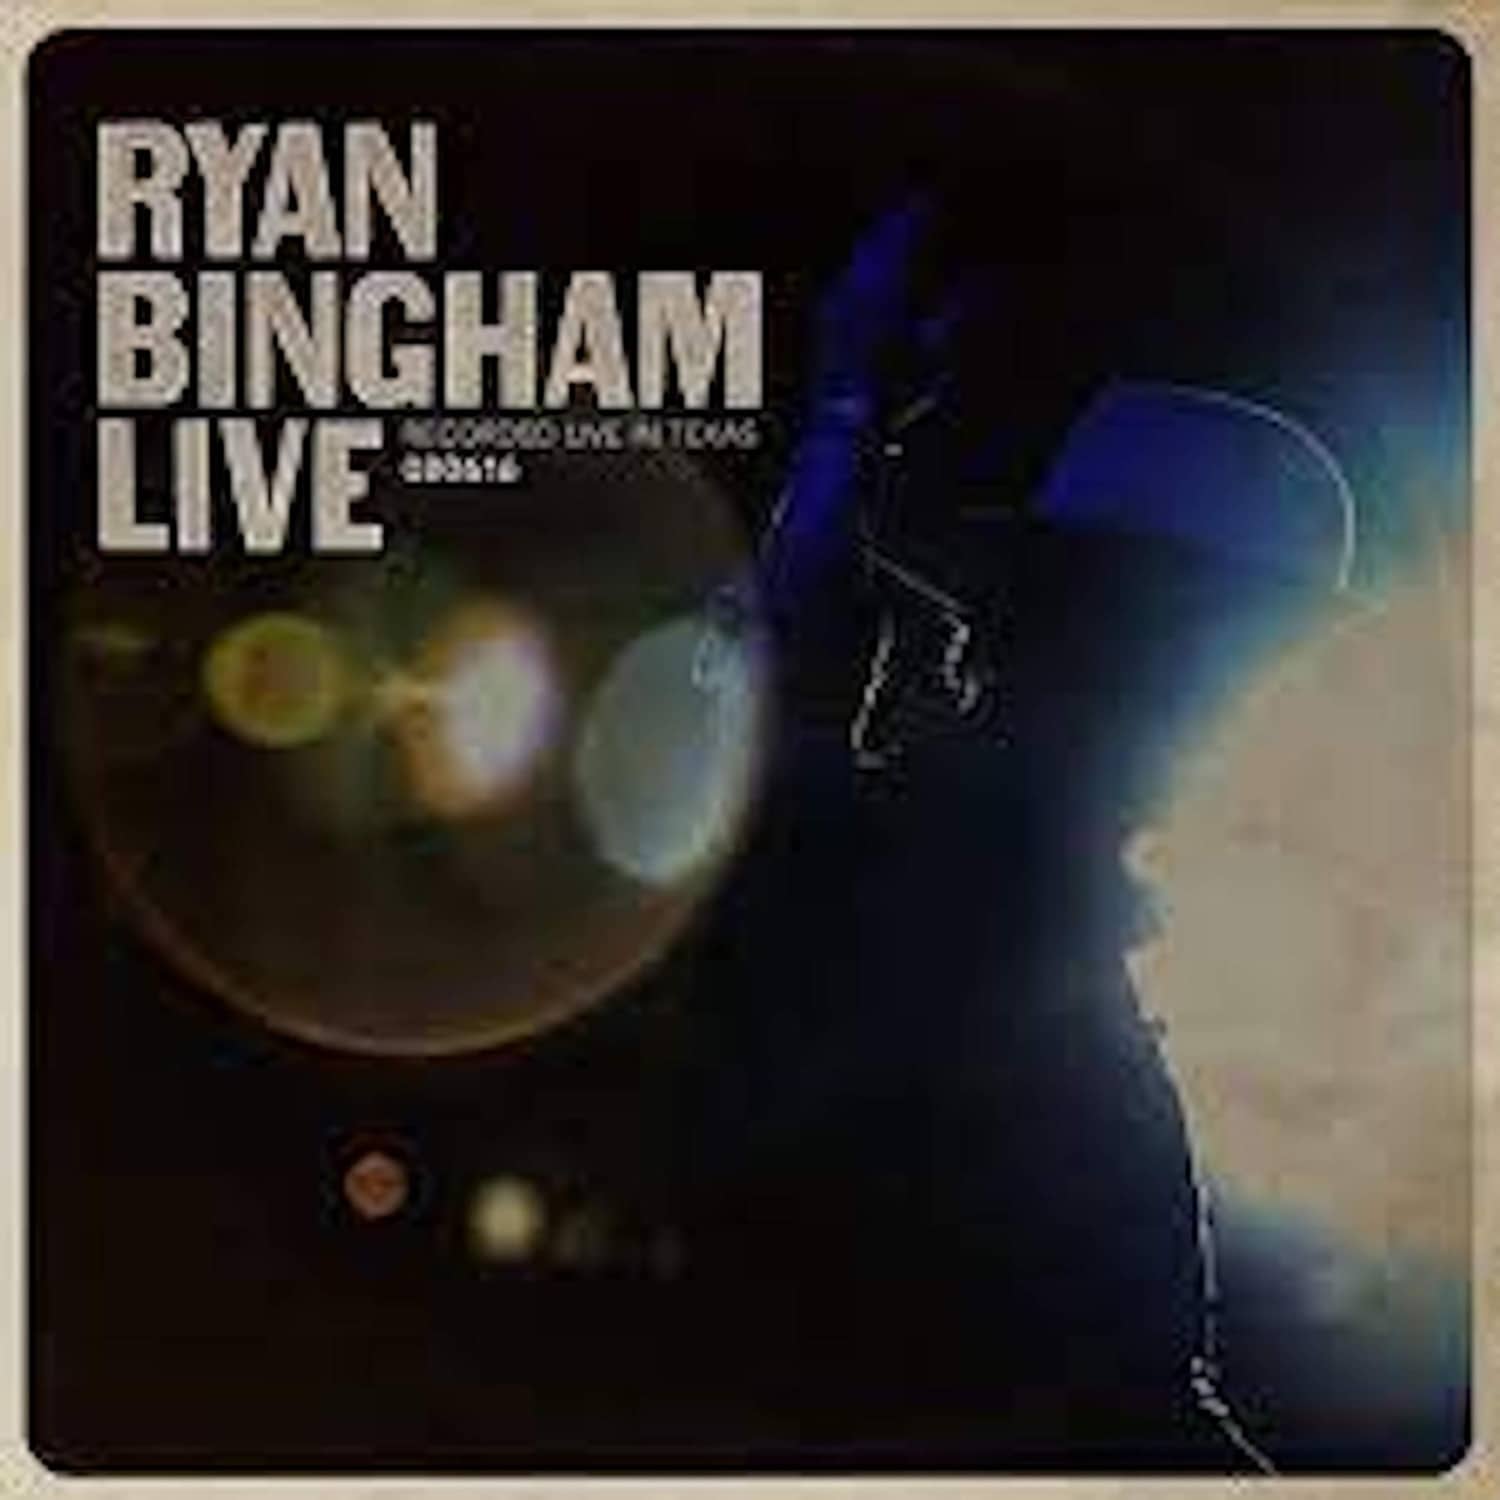 Ryan Bingham - RYAN BINGHAM LIVE 